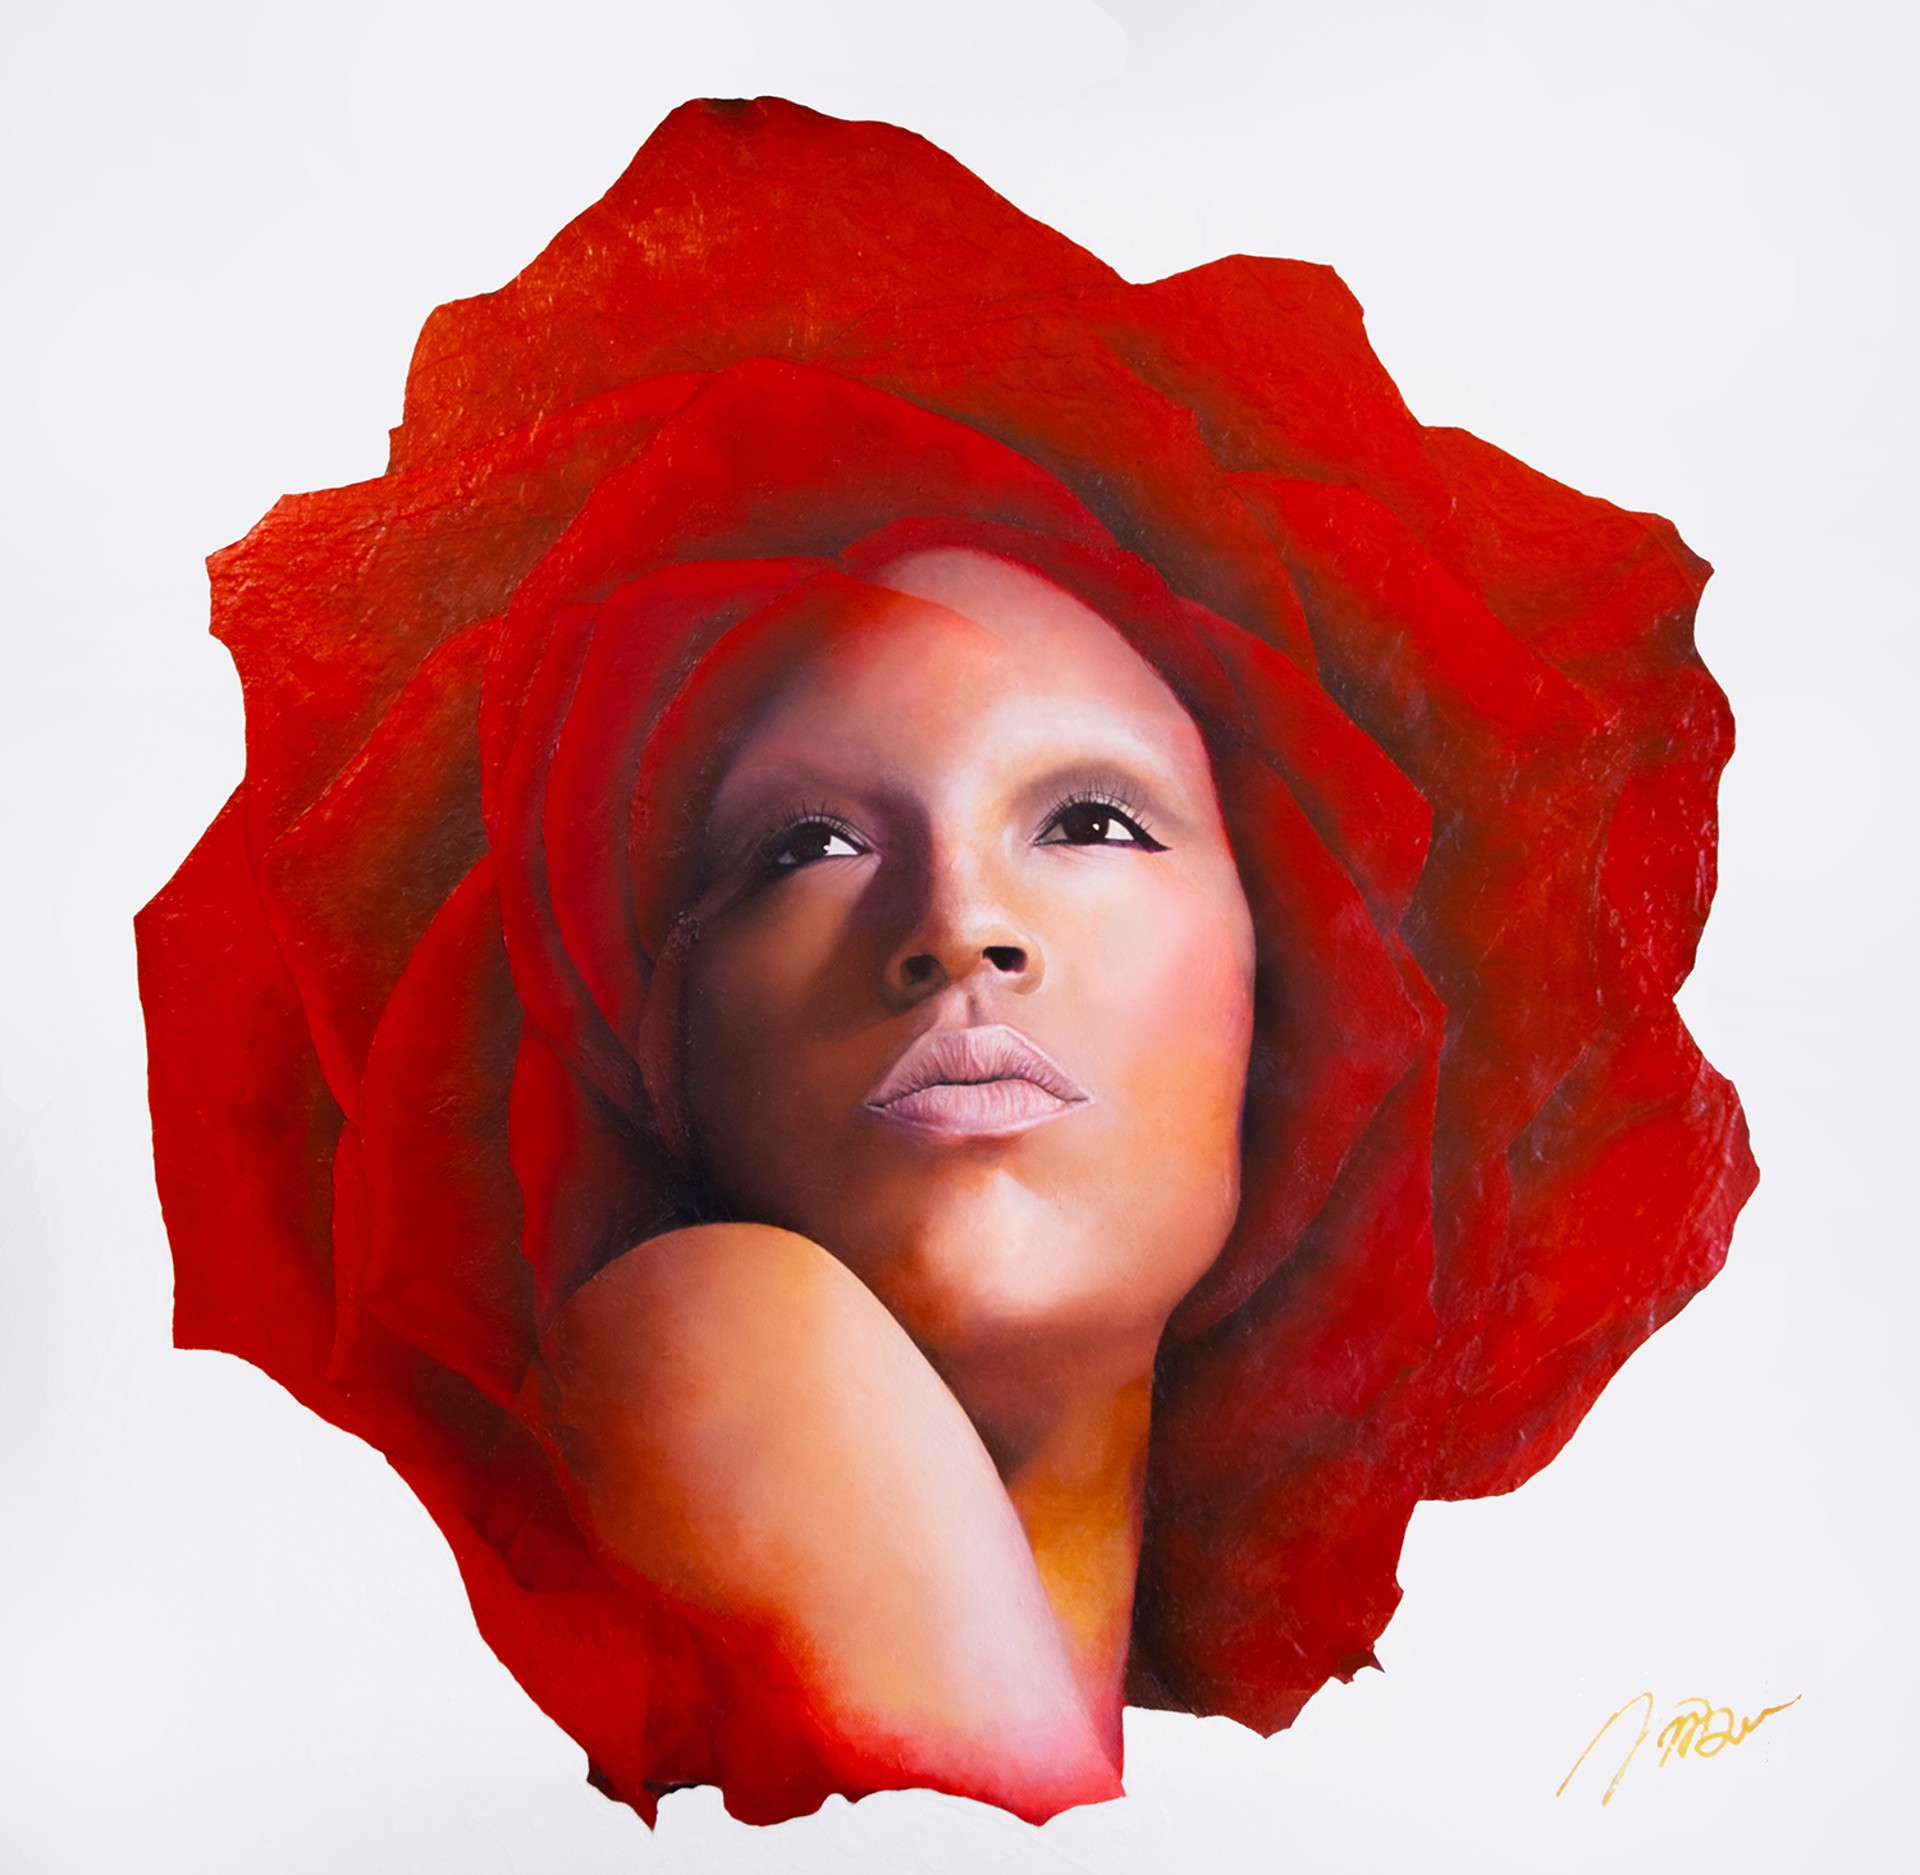 Rose by Jeremy G. Bell